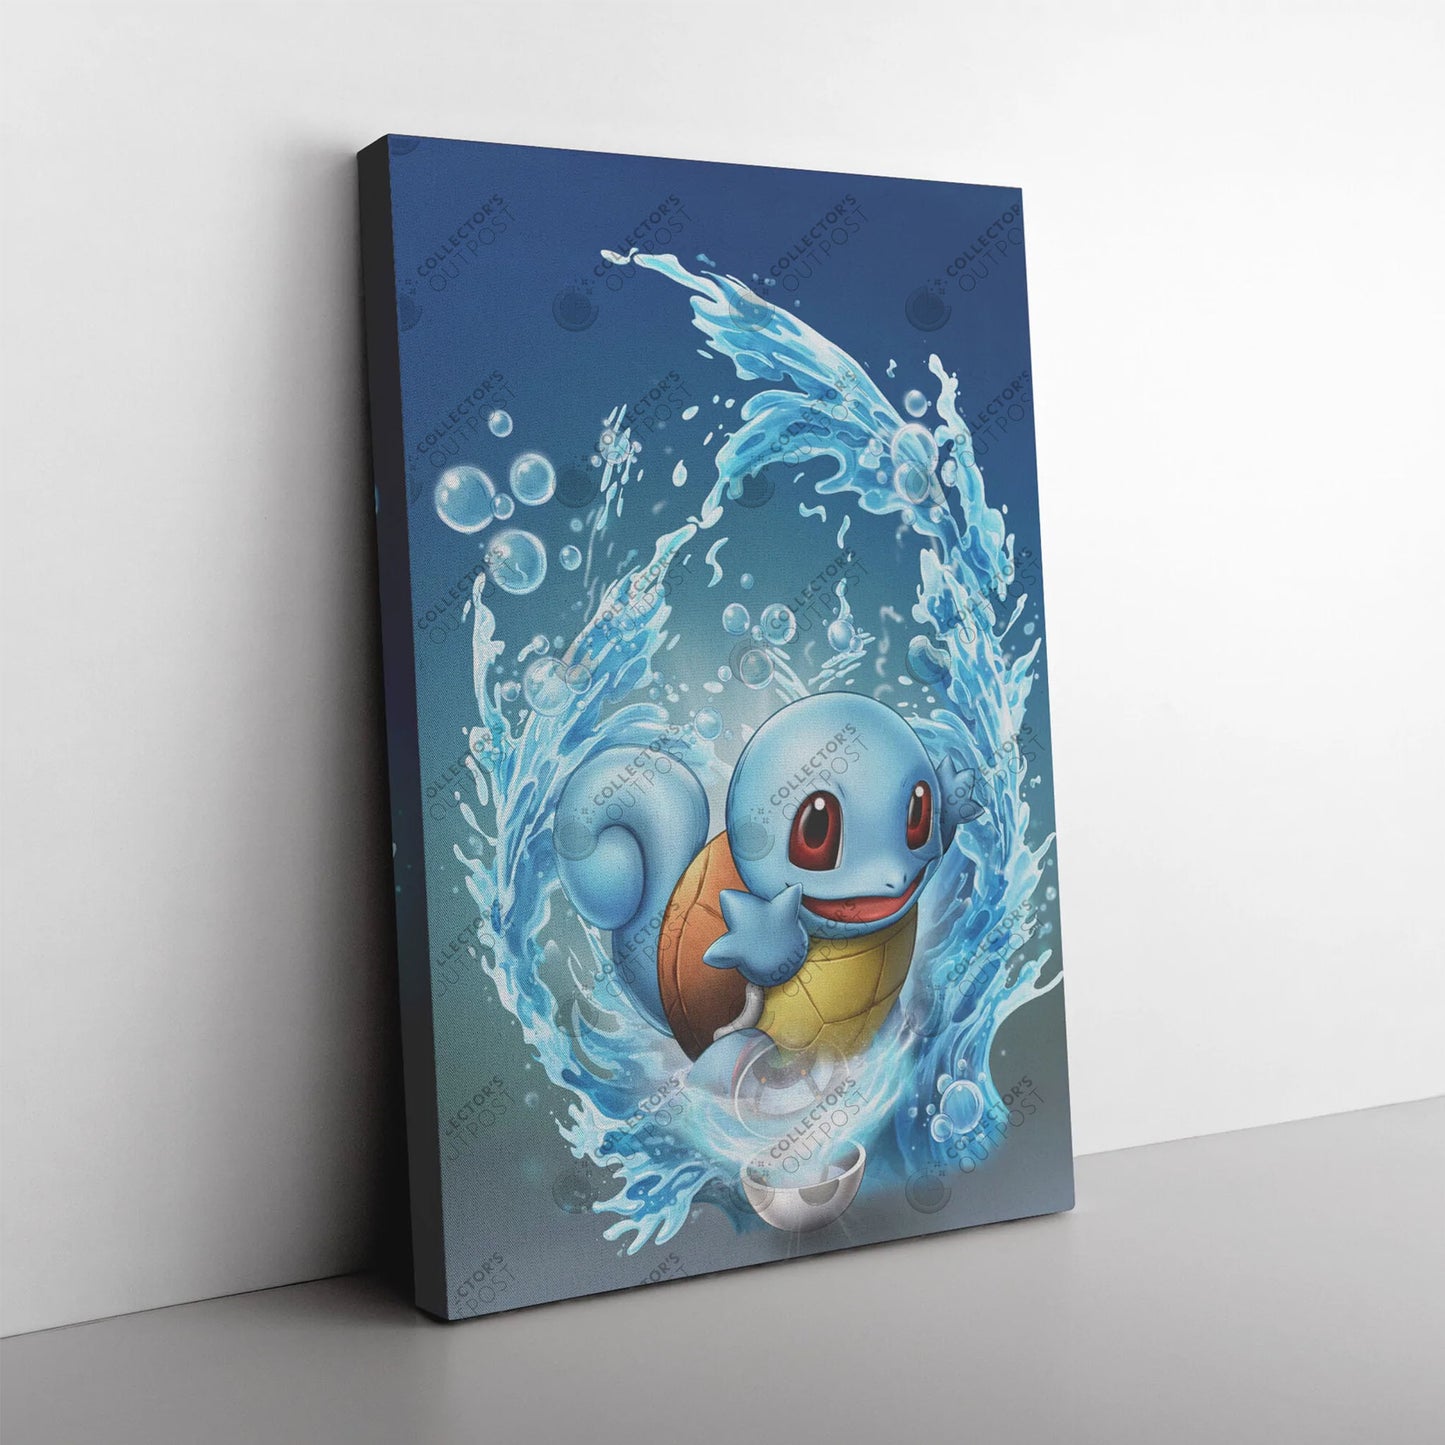 Squirtle #007 (Pokemon) Premium Art Print